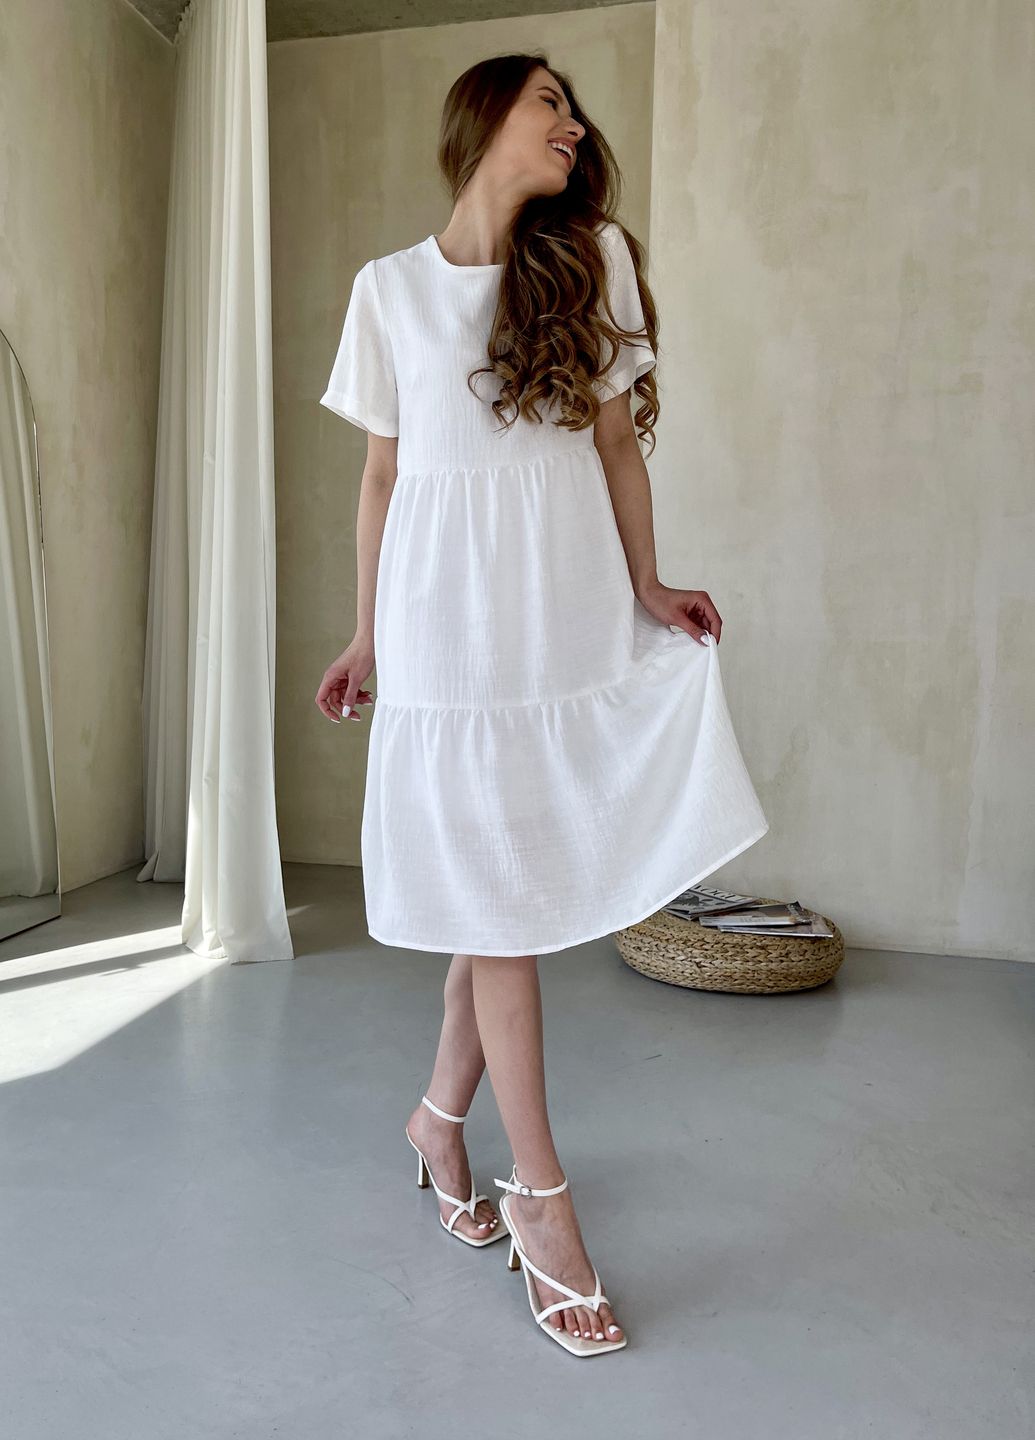 Купить Женское платье до колена однотонное с коротким рукавом из льна белое Merlini Сесто 700000163, размер 42-44 (S-M) в интернет-магазине